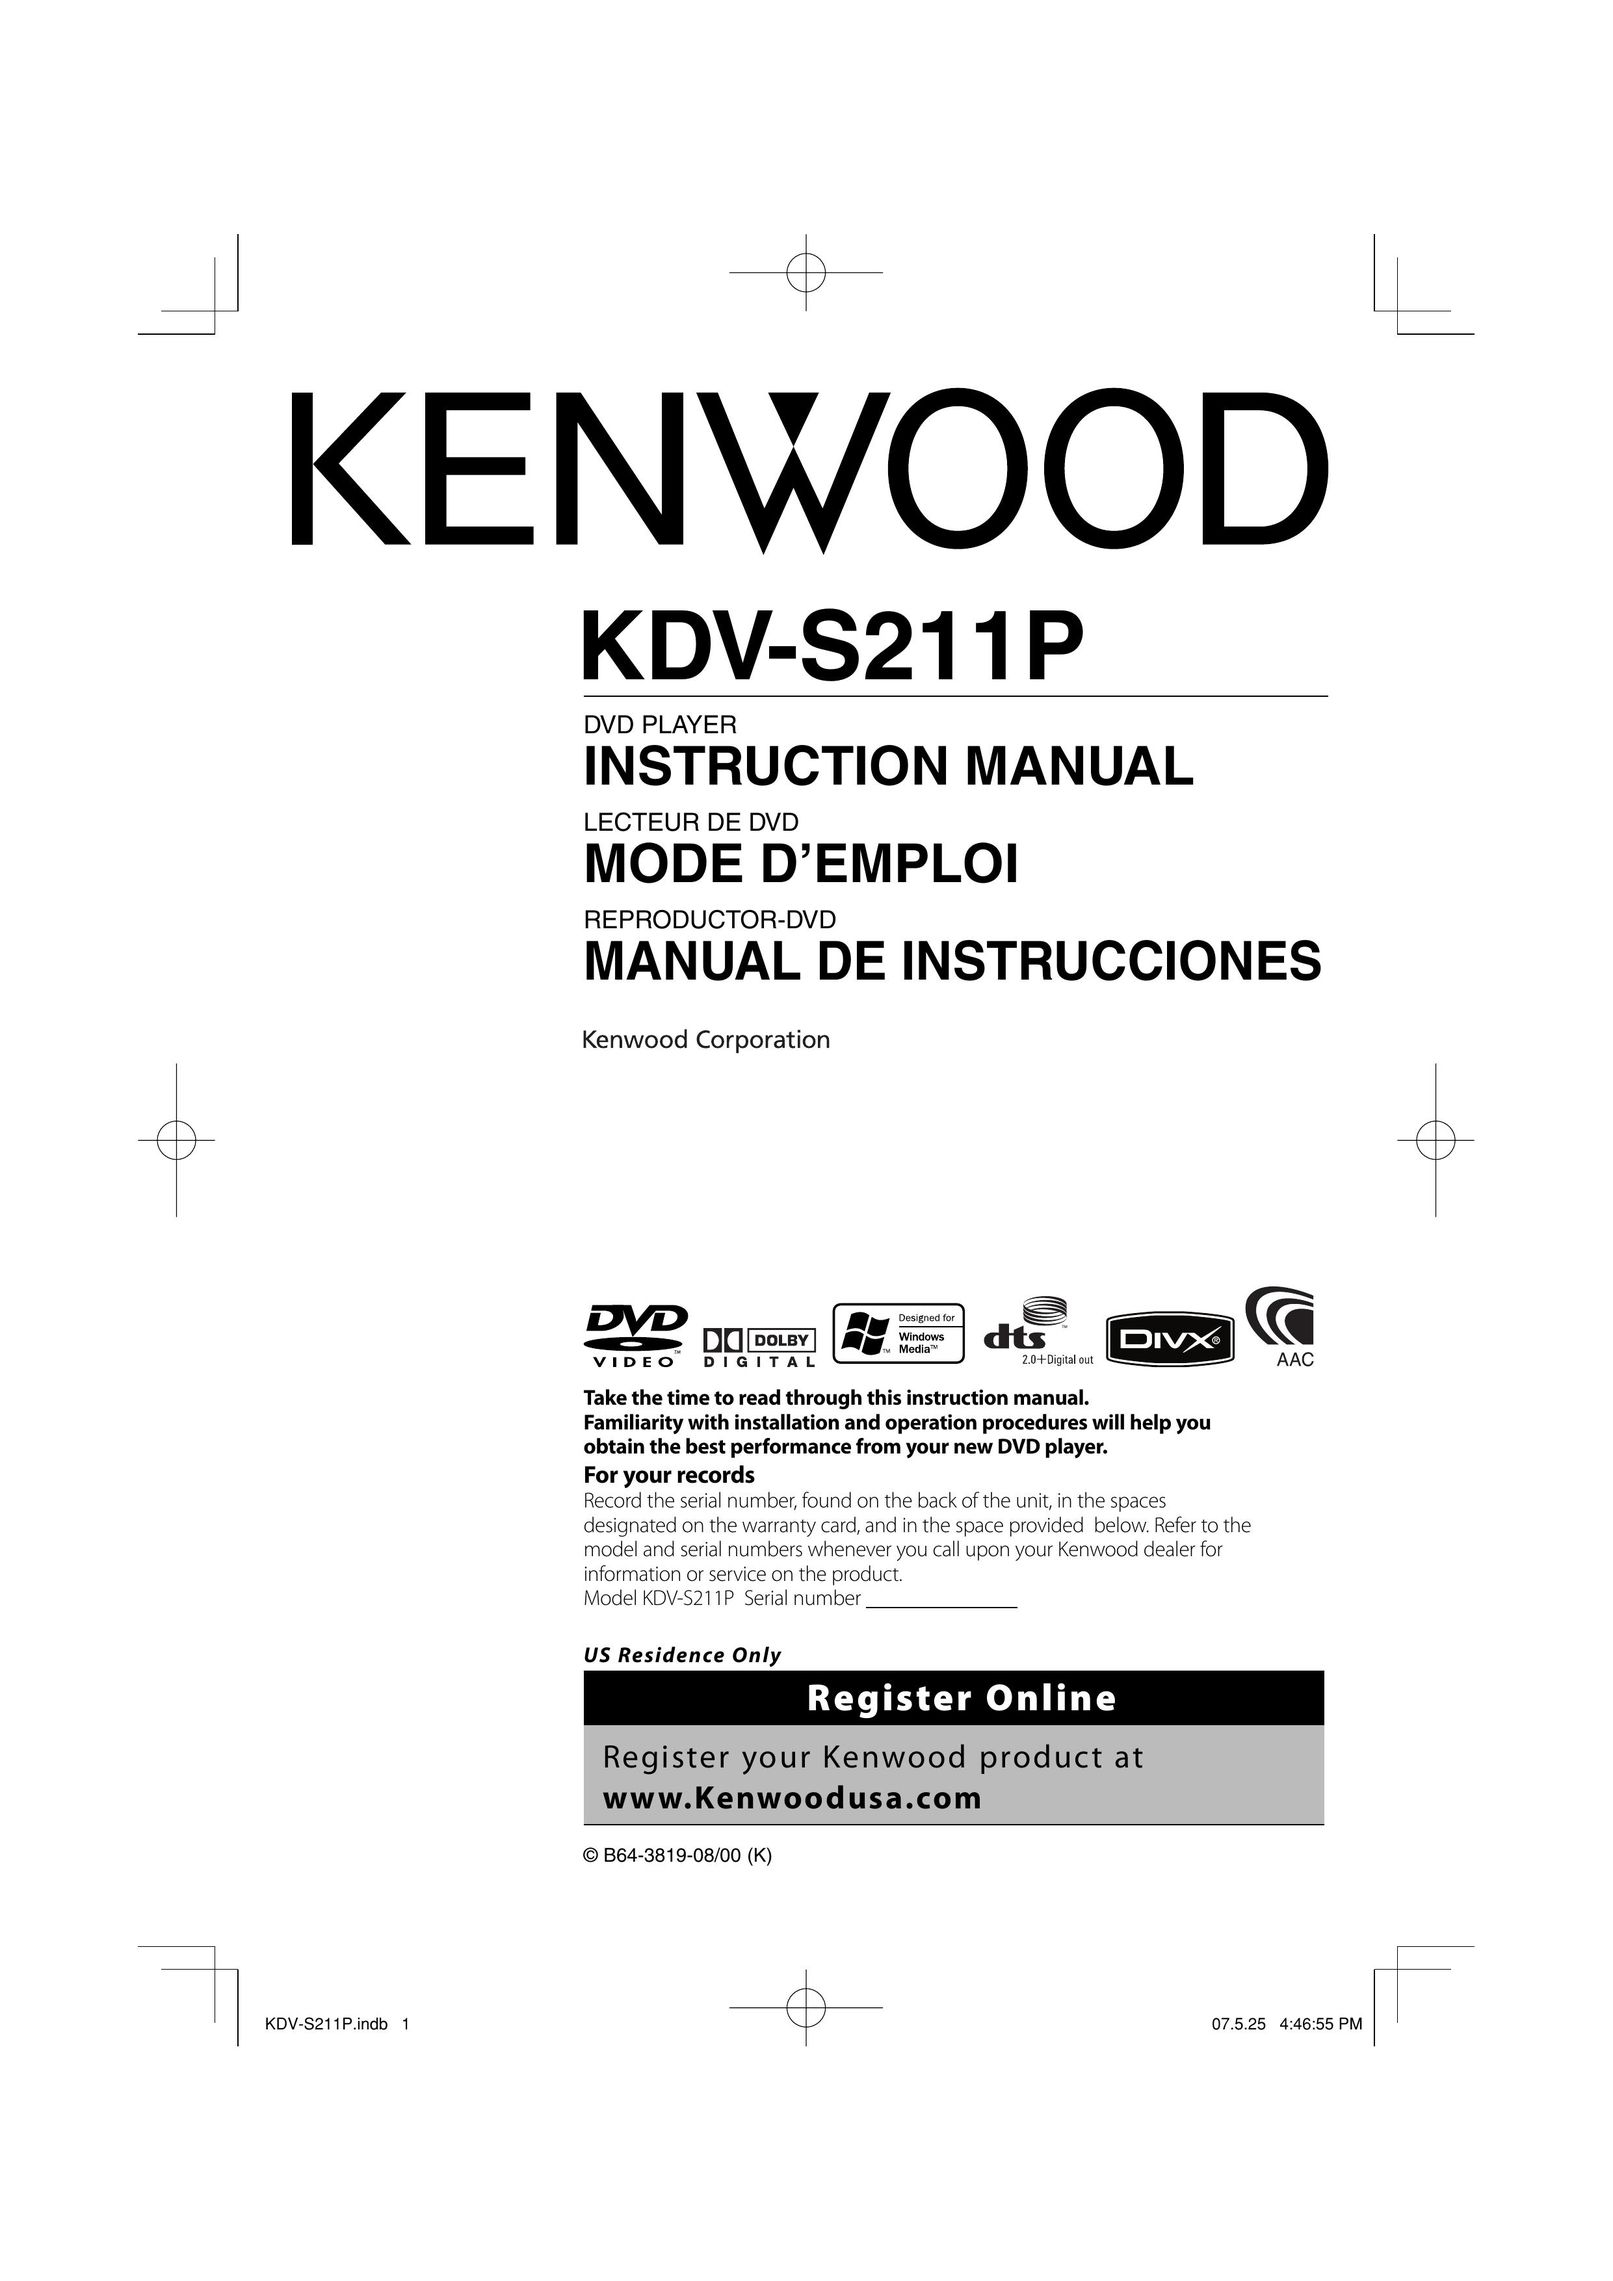 Kenwood KDV-S211P DVD Player User Manual